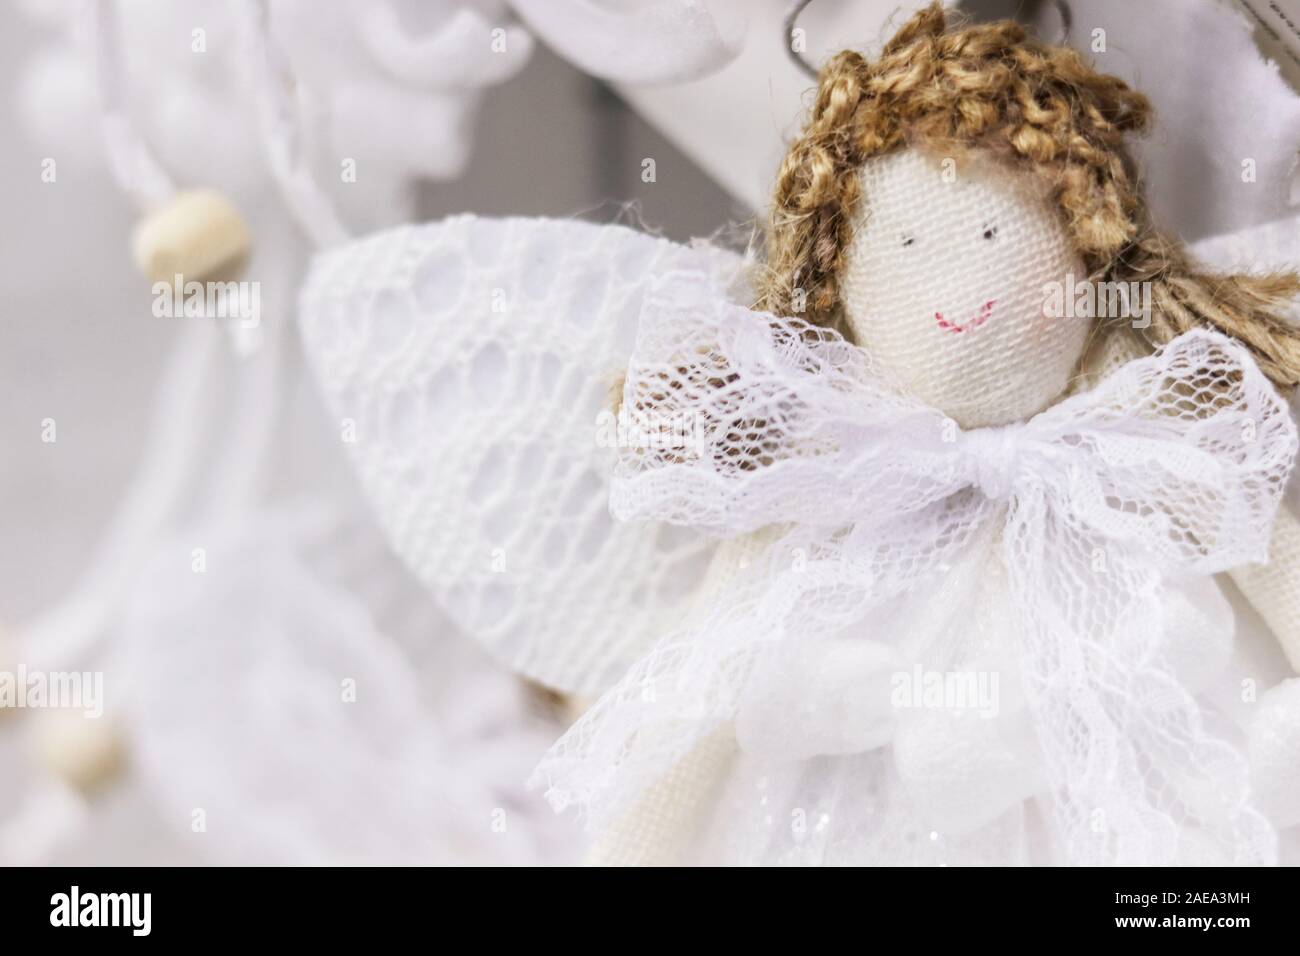 Jolie poupée en tissu ange fait main avec cheveux bouclés, ailes en dentelle blanche et robe. Fond décoratif de Noël à mise au point douce Banque D'Images